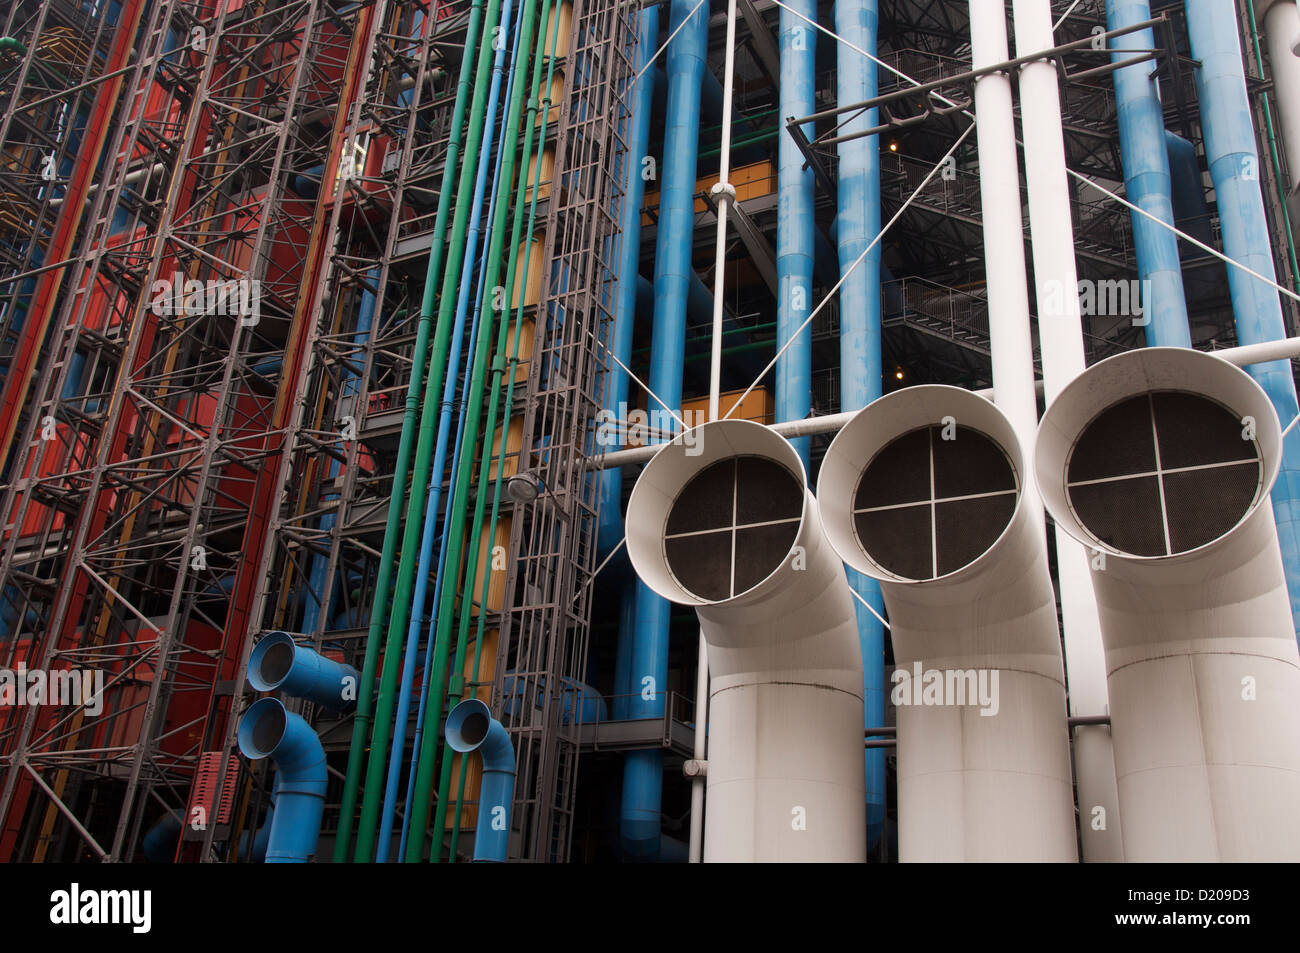 Moderne Architektur. Das Centre Pompidou, gesehen von der Rue Beaubourg. Die berühmten bunten Rohren und Leitungen auffällig auf der Außenseite. Paris, Frankreich. Stockfoto